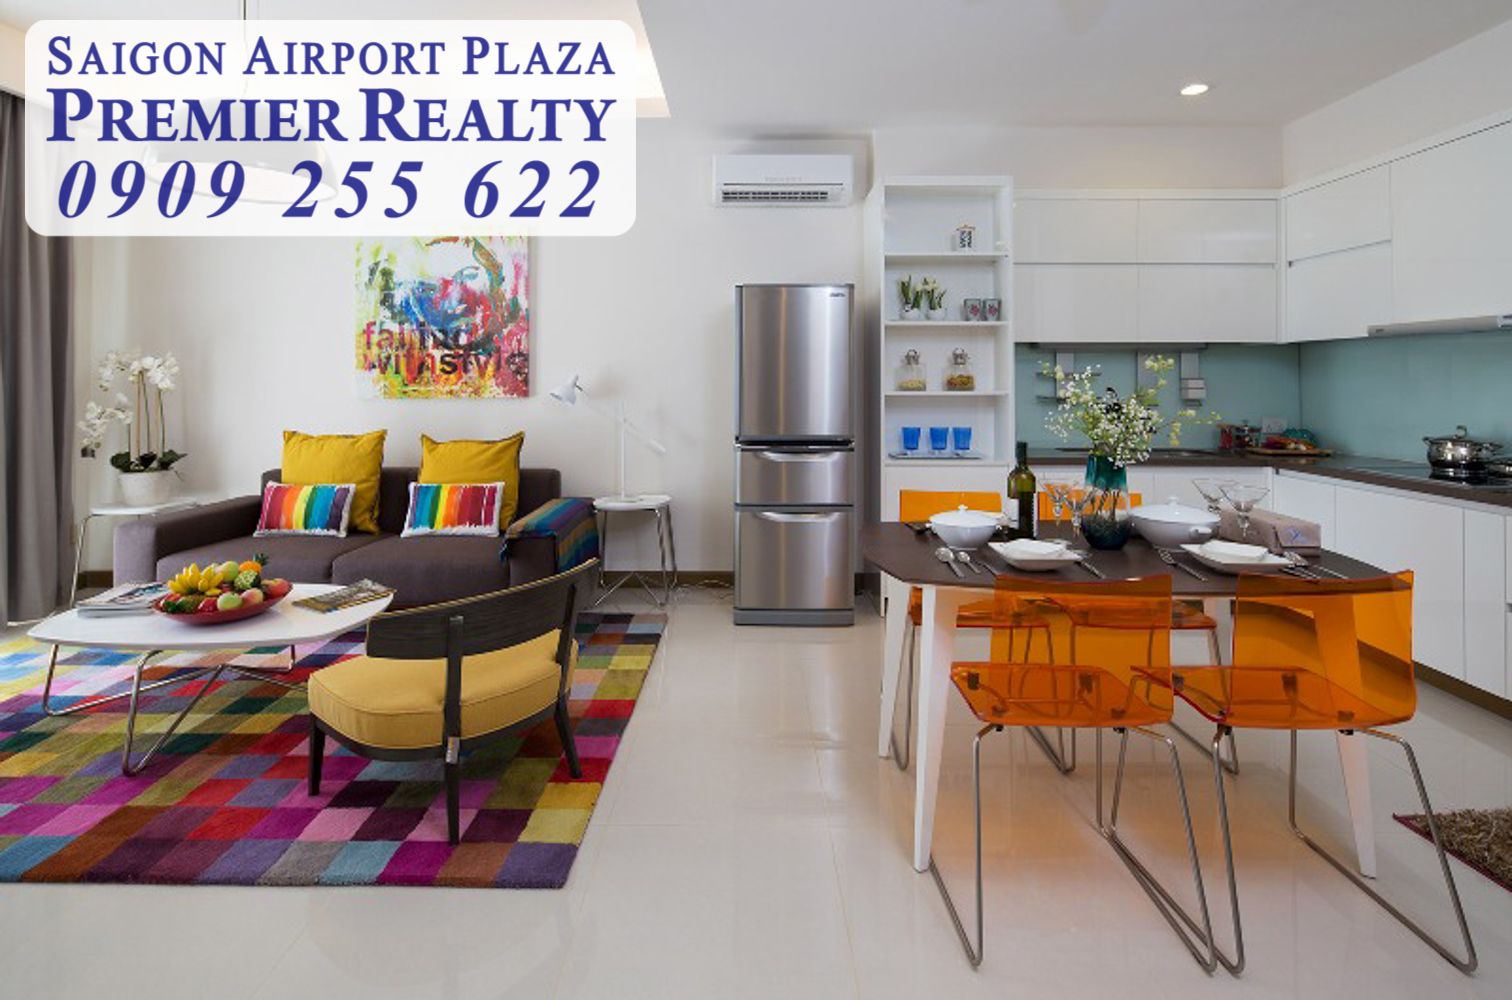 Cho thuê căn hộ chung cư Saigon Airport, 3pn - nội thất hiện đại, căn góc, giá hấp dẫn. Hotline Pkd 0909 255 622 xem nhà ngay